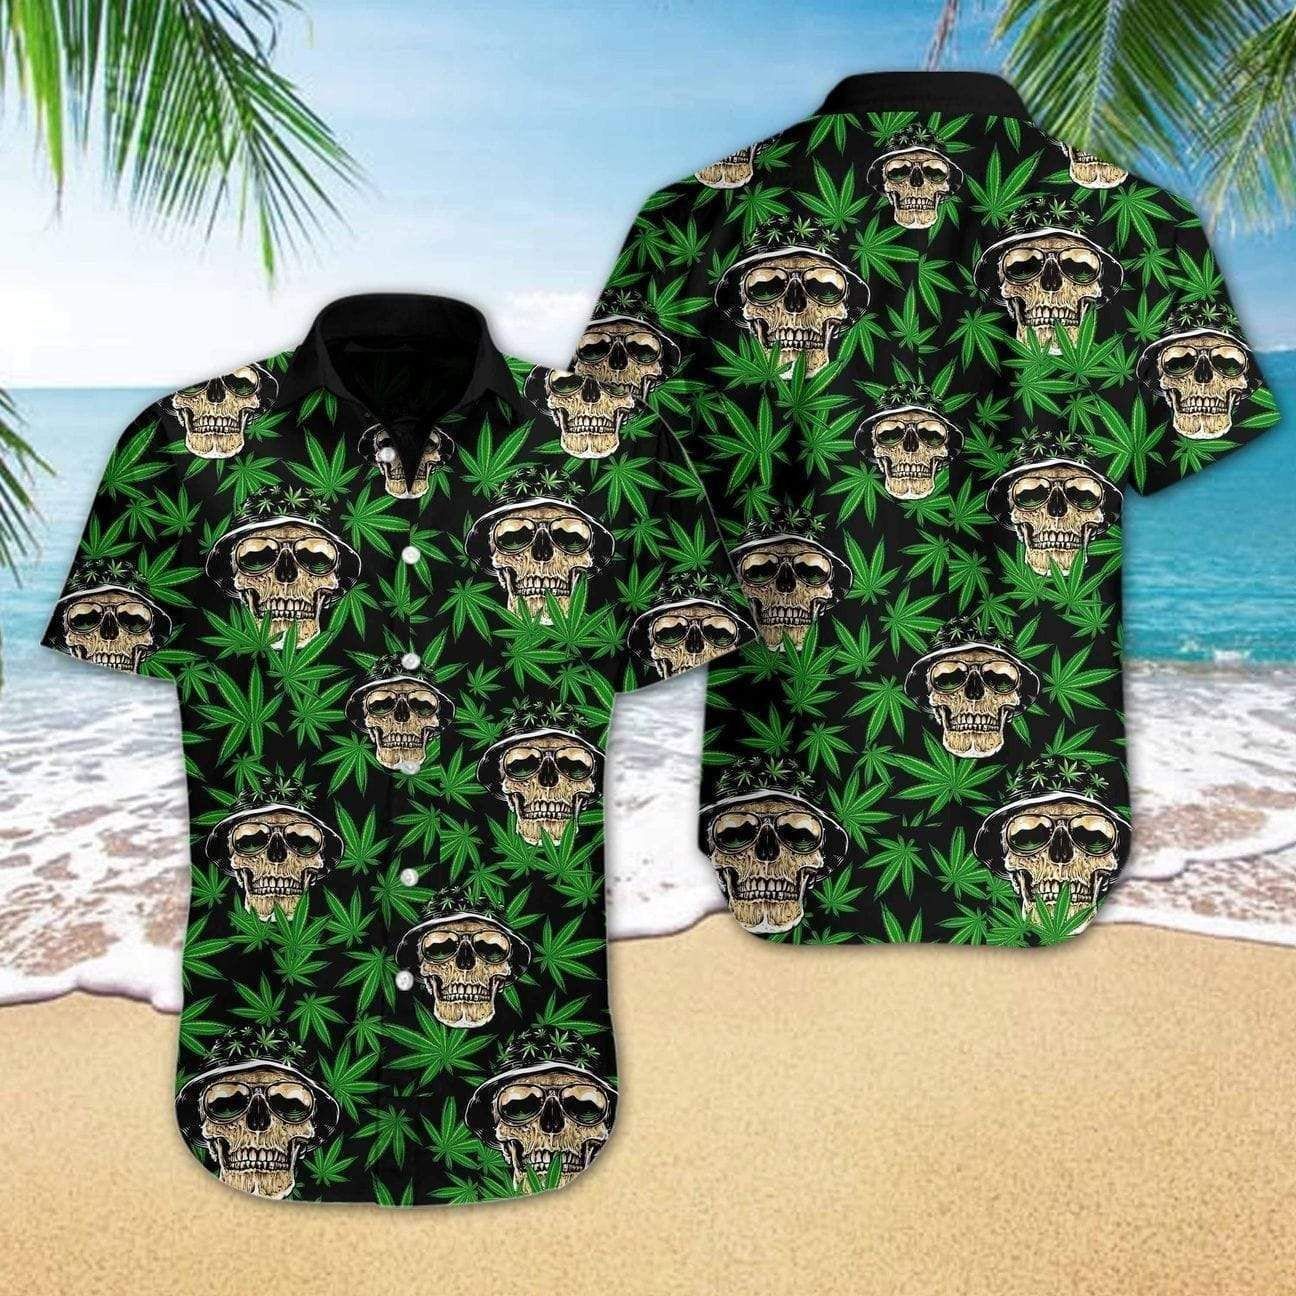 Mega Cool Skull Weed Cannabis Tropical Hawaiian Shirts